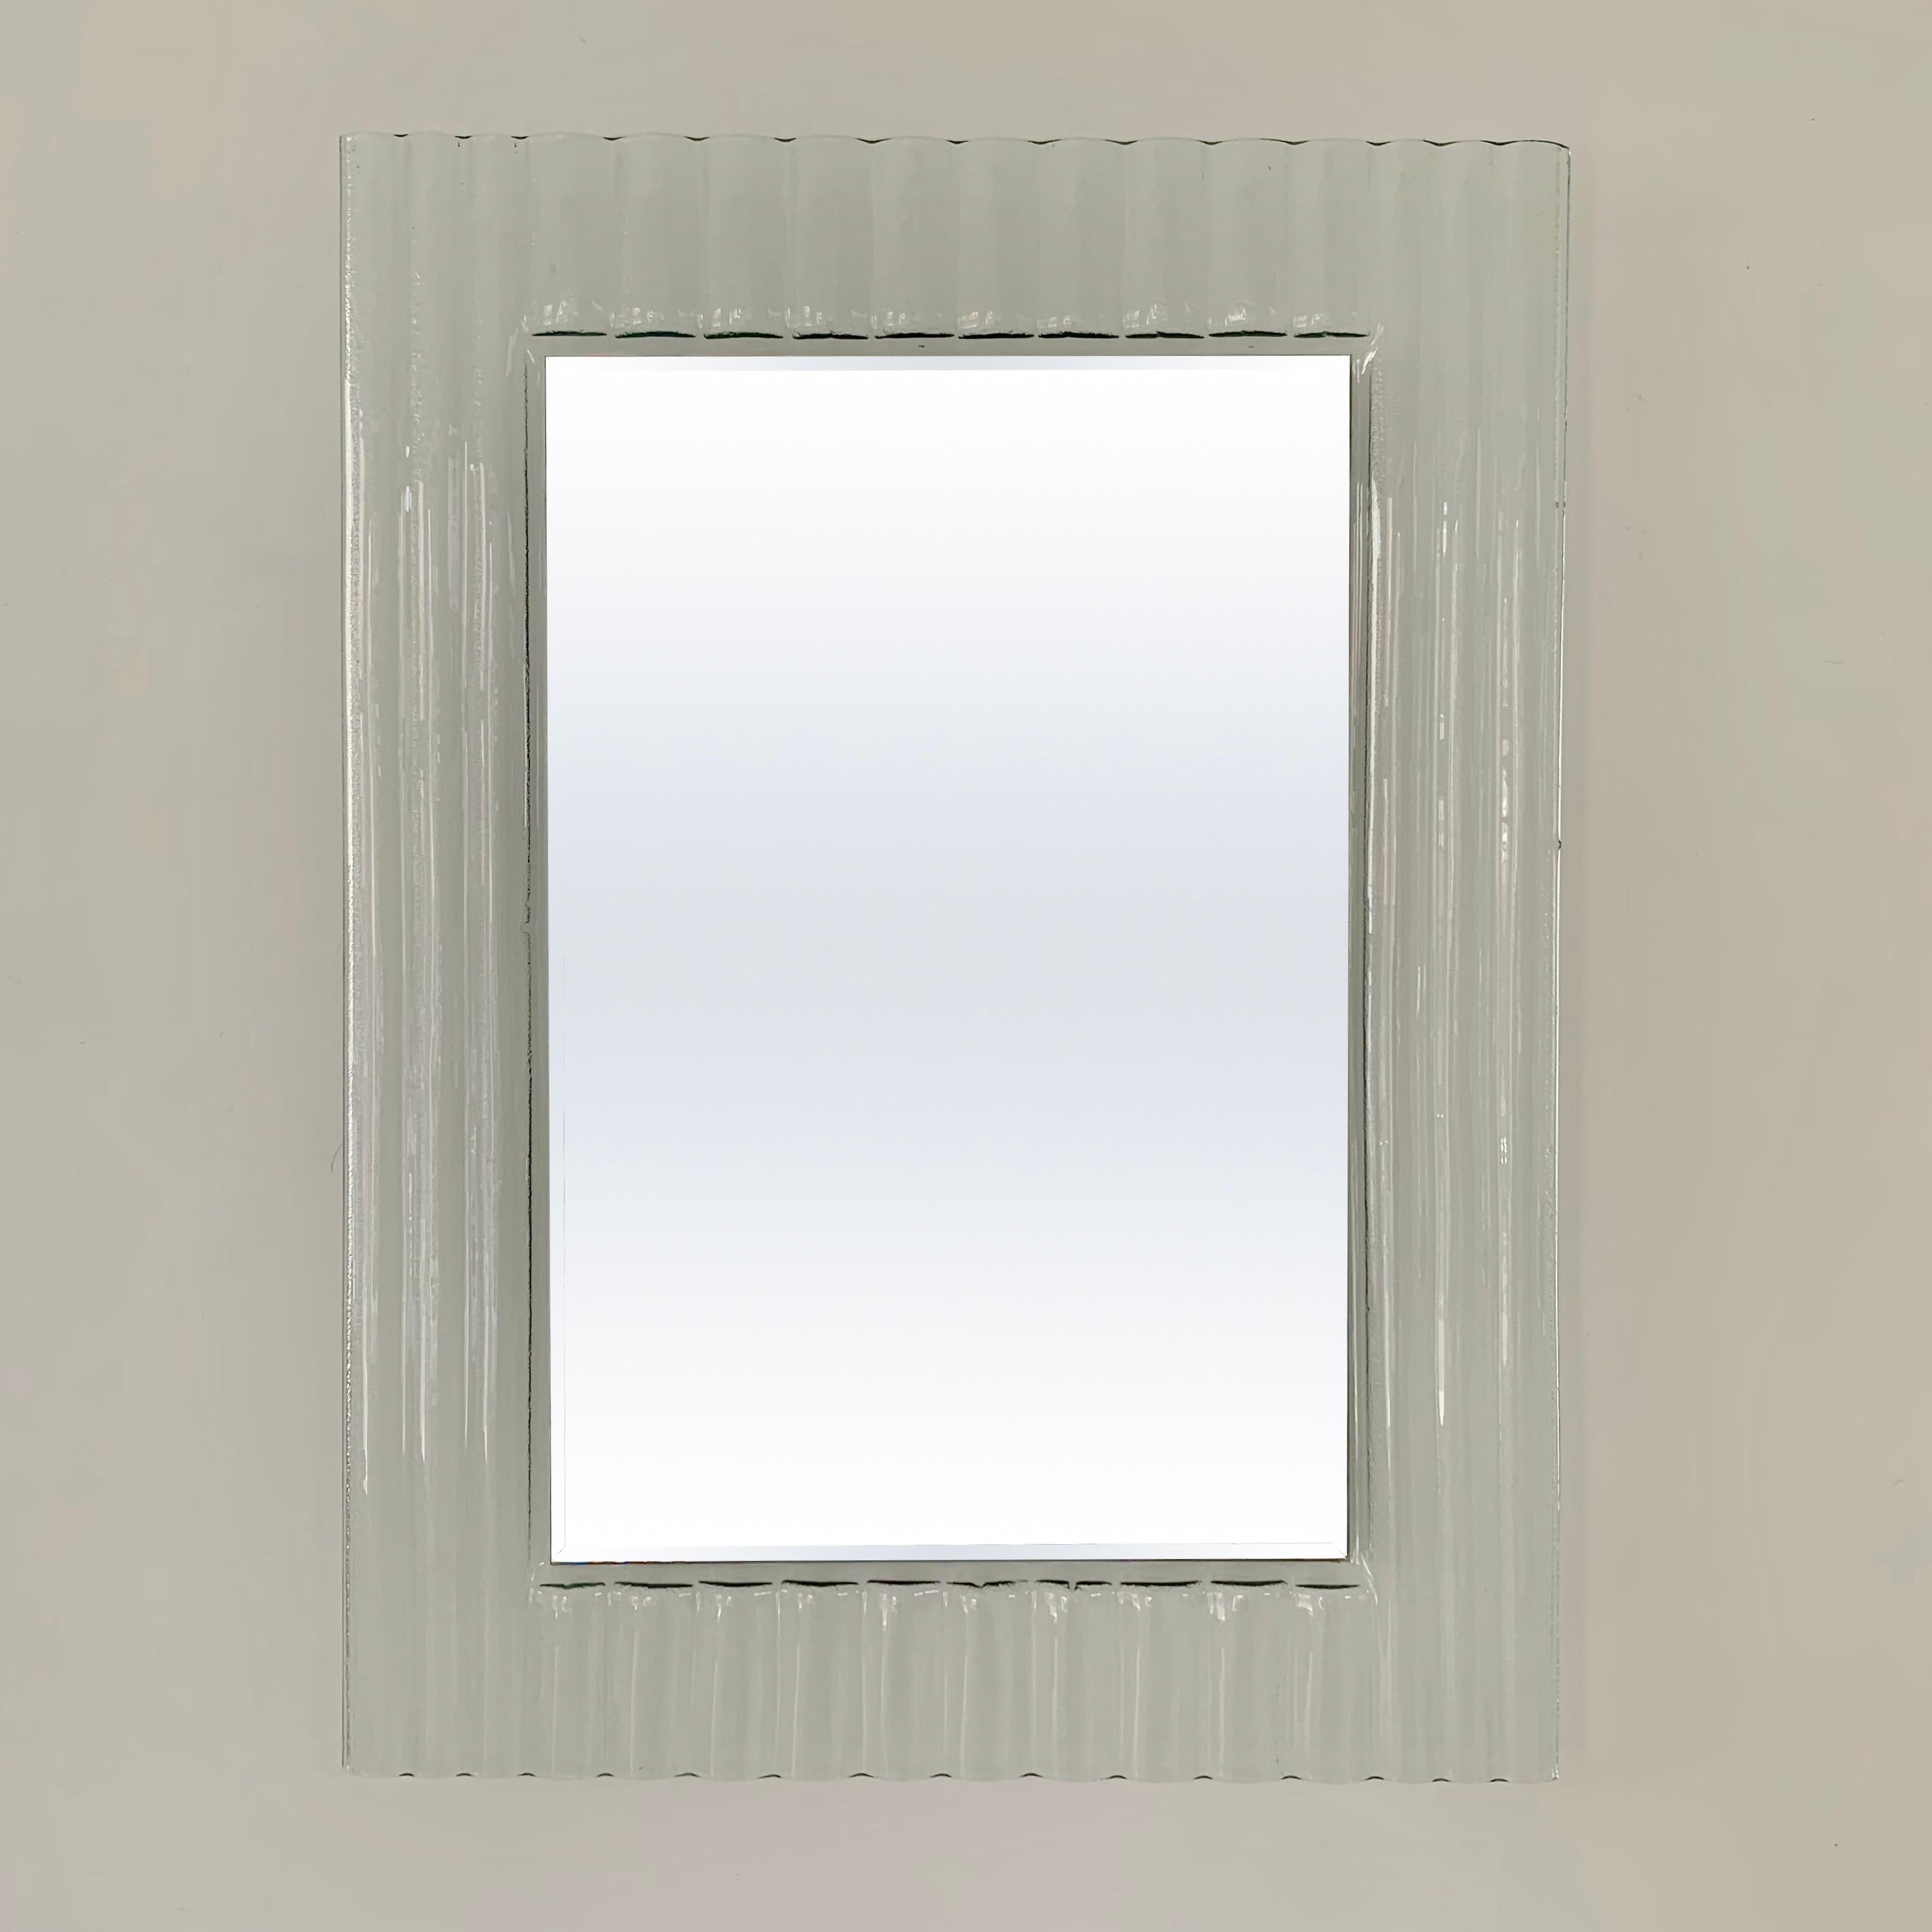 Eleganter italienischer rechteckiger Spiegel, um 1980, Italien.
Murano-Glas mit Ripple-Effekt.
Ron Arad Zuschreibung von Design.
Abmessungen: 80 cm H, 60 cm B, 3 cm T.
Guter Originalzustand, keine Risse.
Alle Käufe sind durch unsere